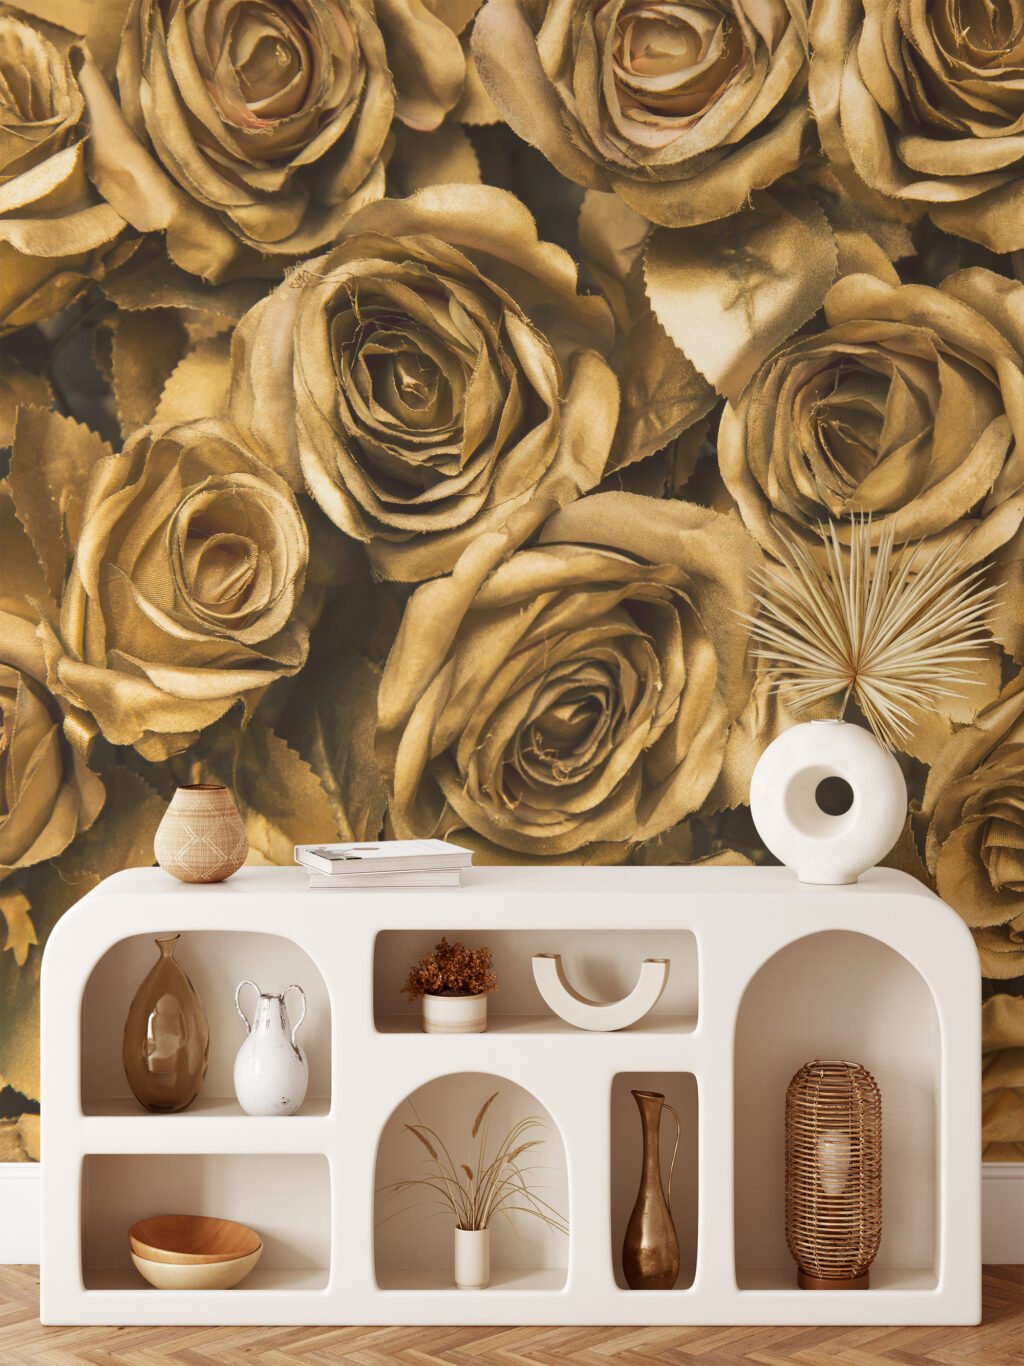 Büyük Altın Gül Desenli Duvar Kağıdı, Zarif ve Lüks Duvar Dekoru için 3D Duvar Posteri Çiçekli Duvar Kağıtları 8